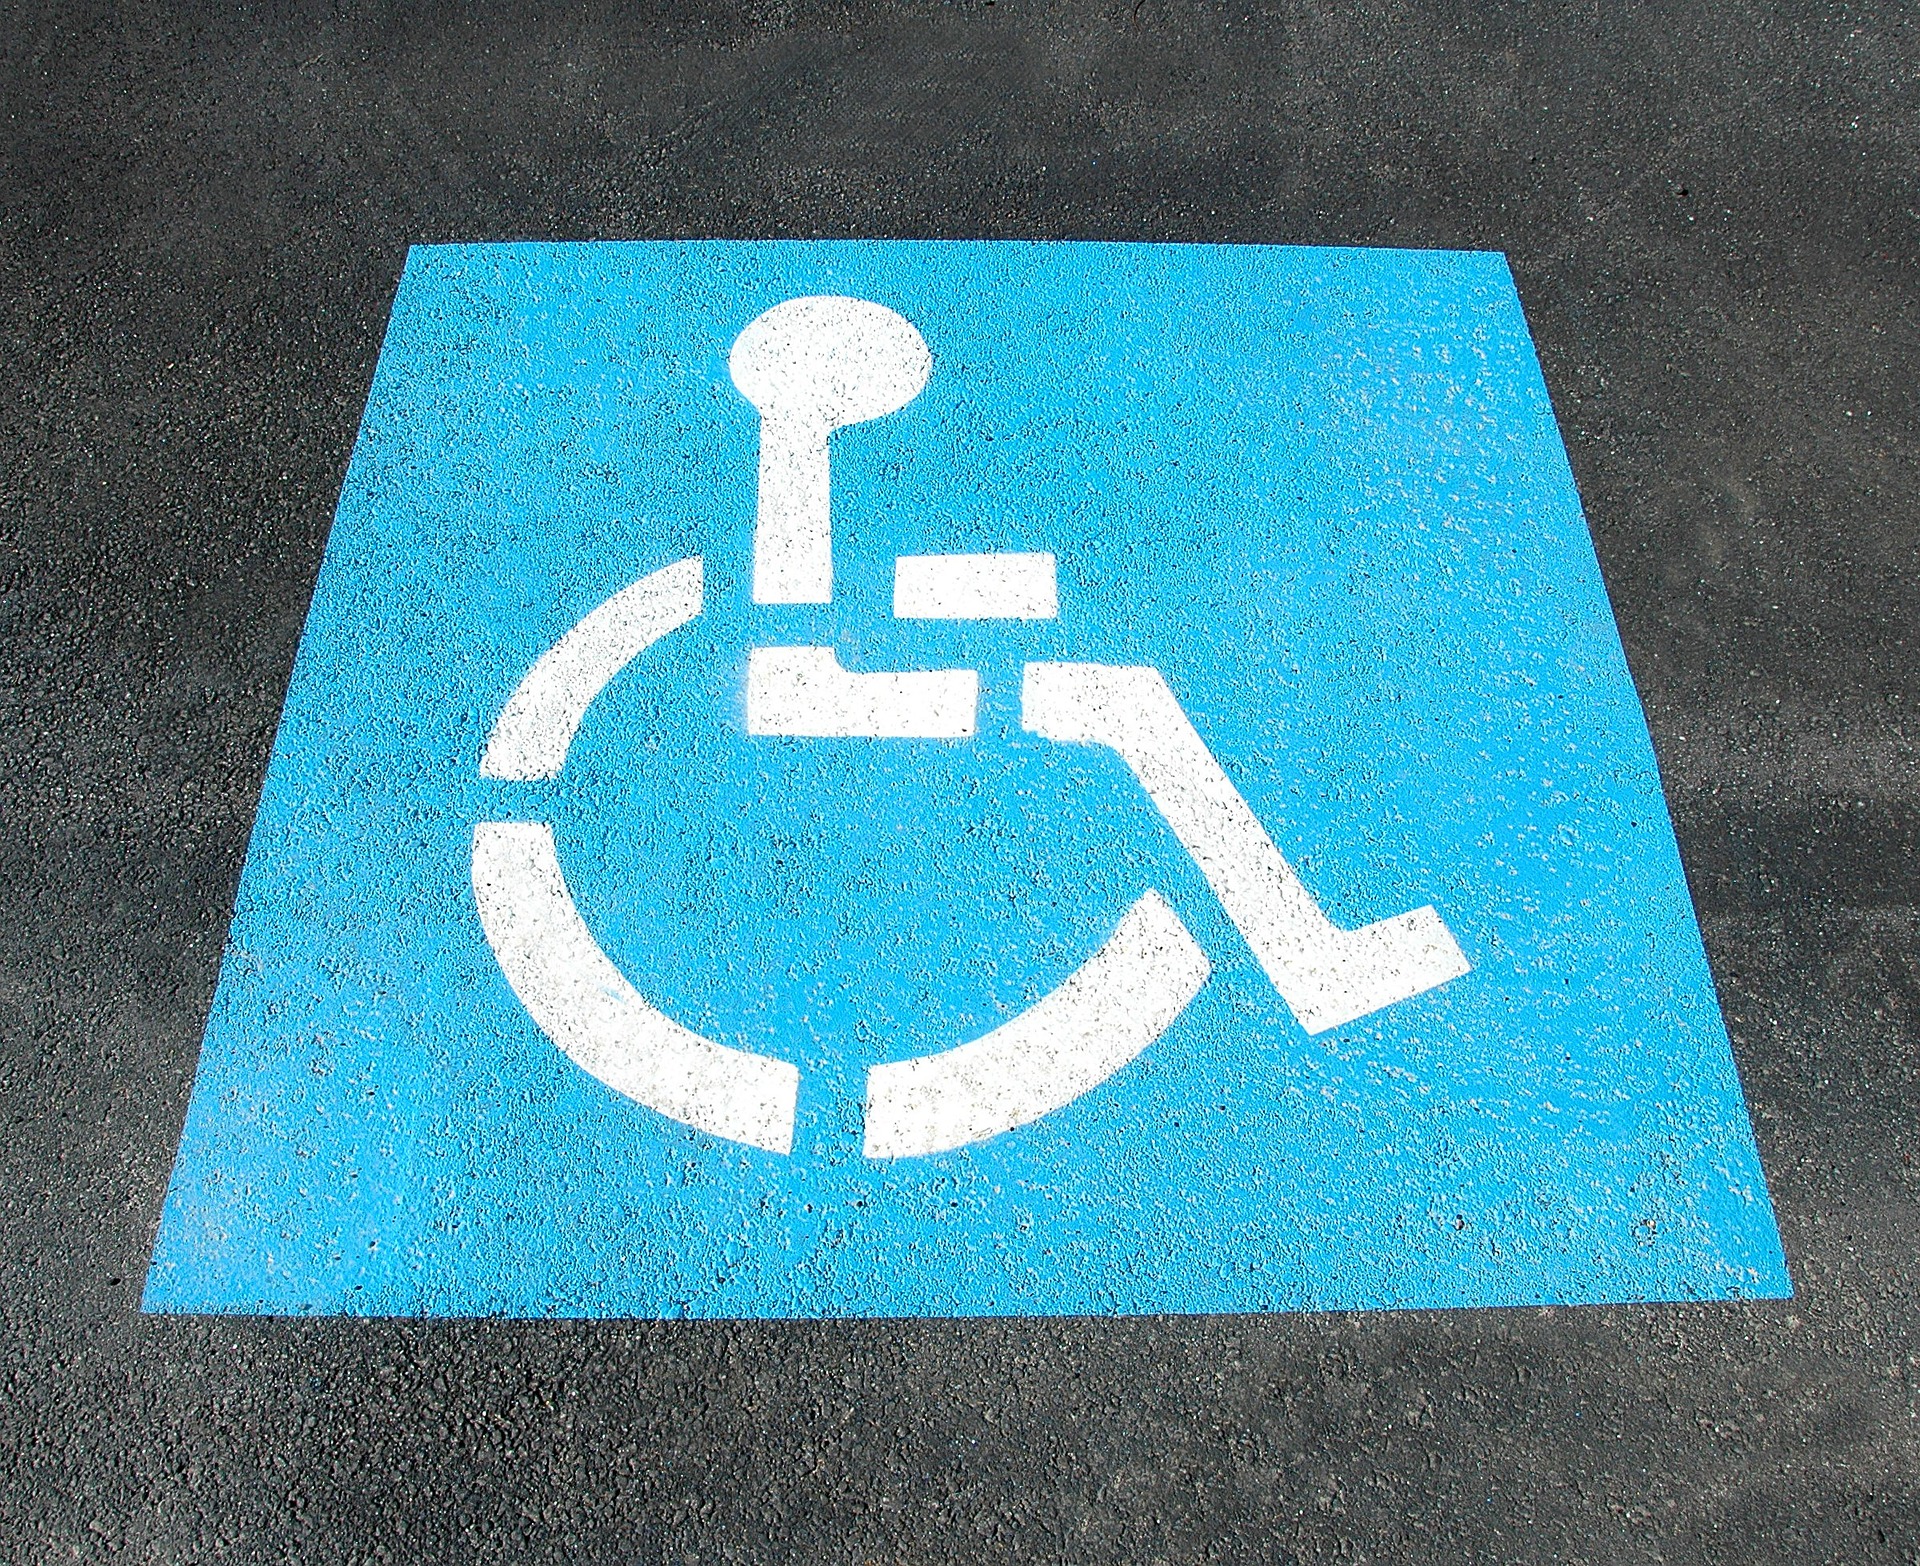 diasabled parking sign